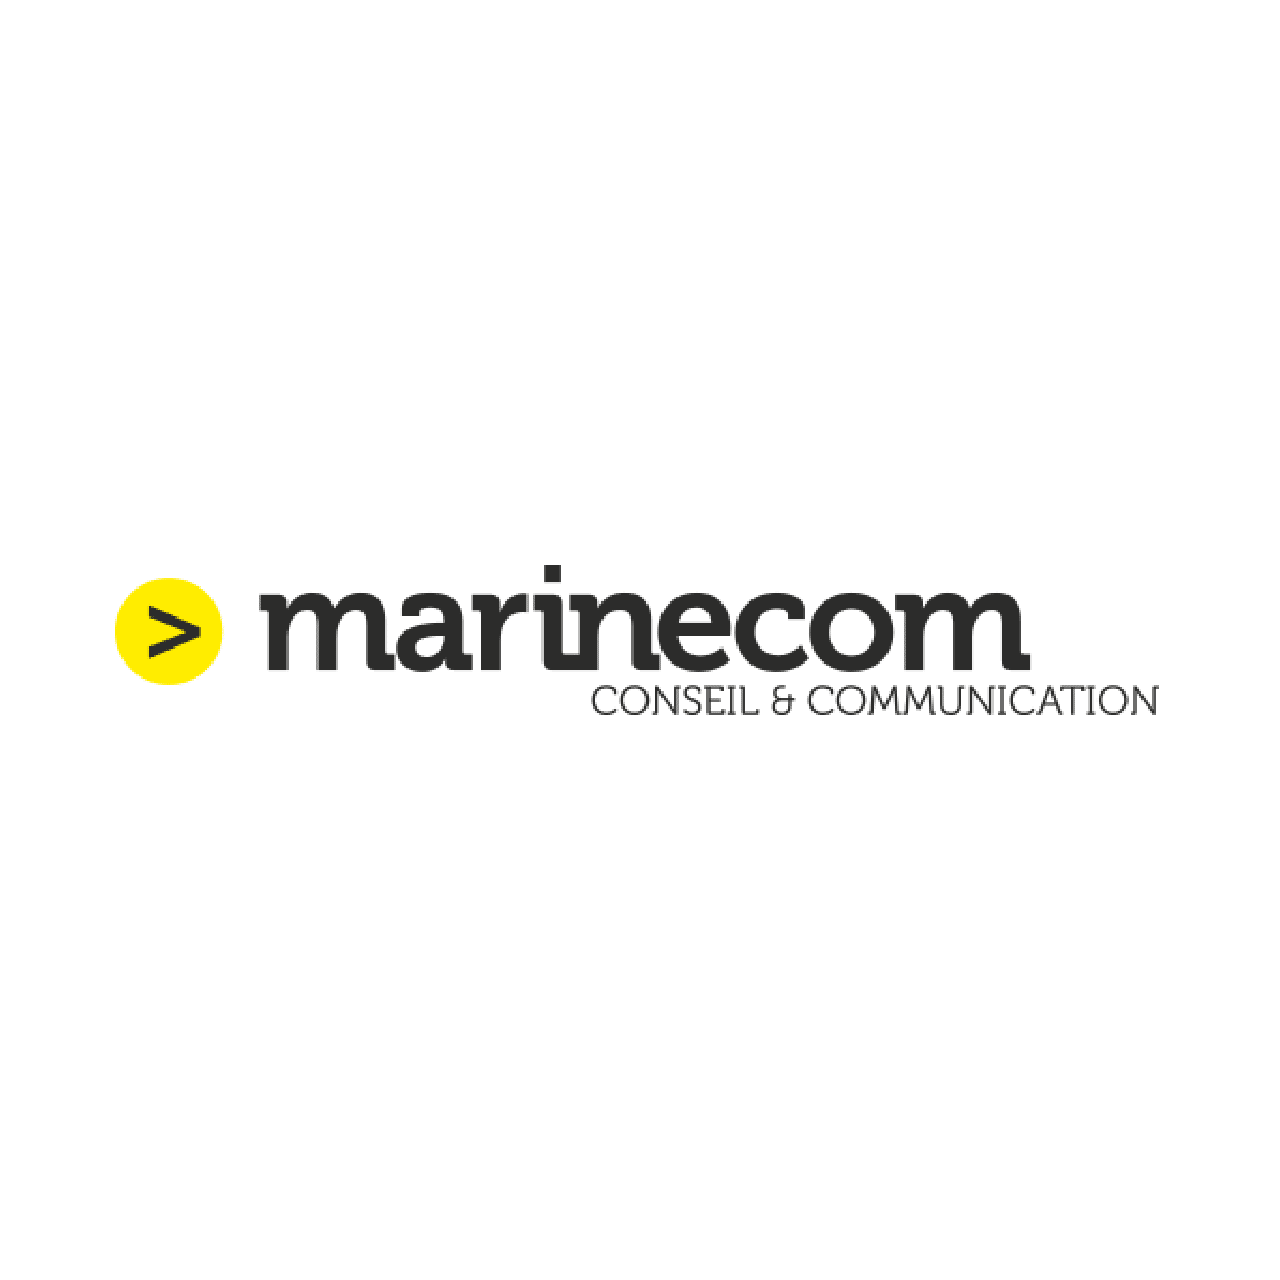 Marinecom